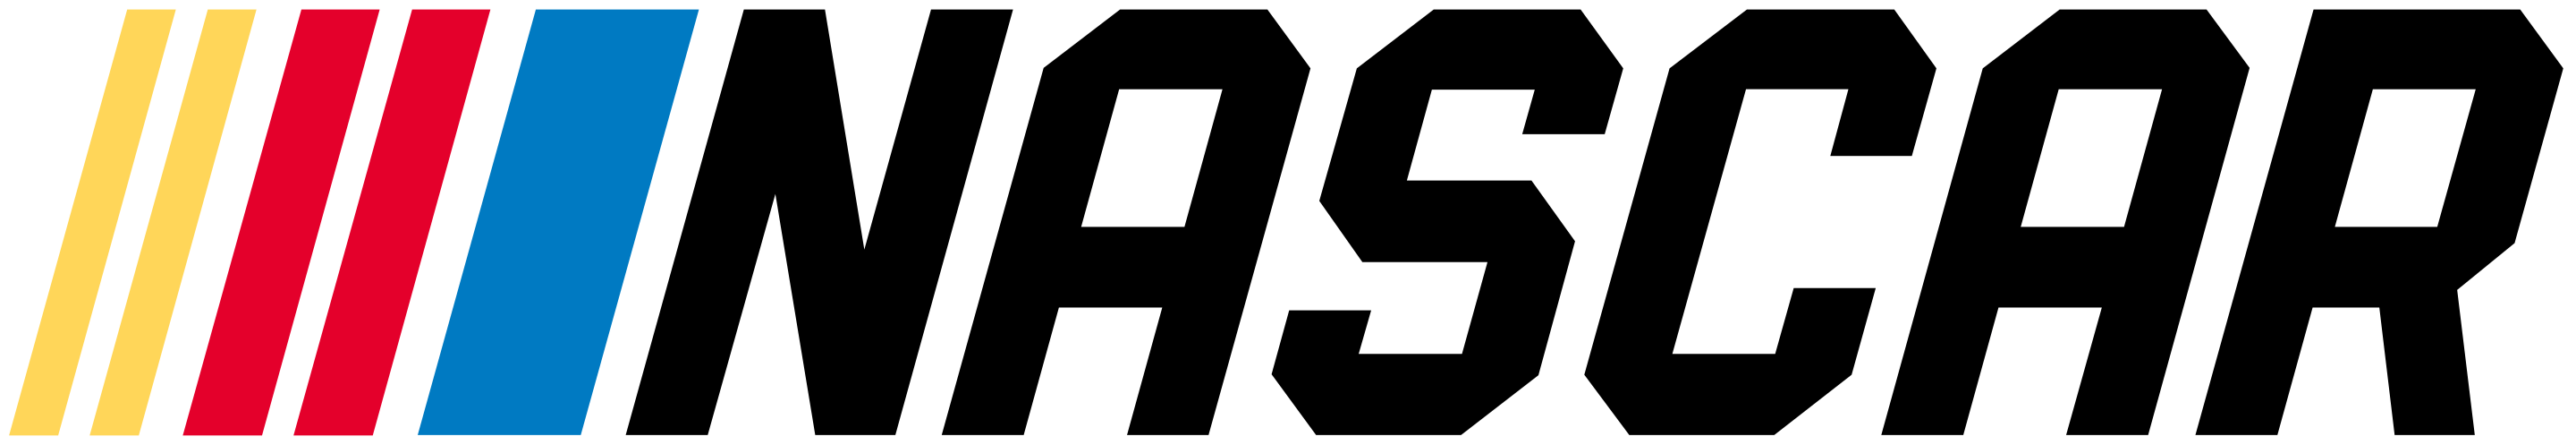 NASCAR logo 2017